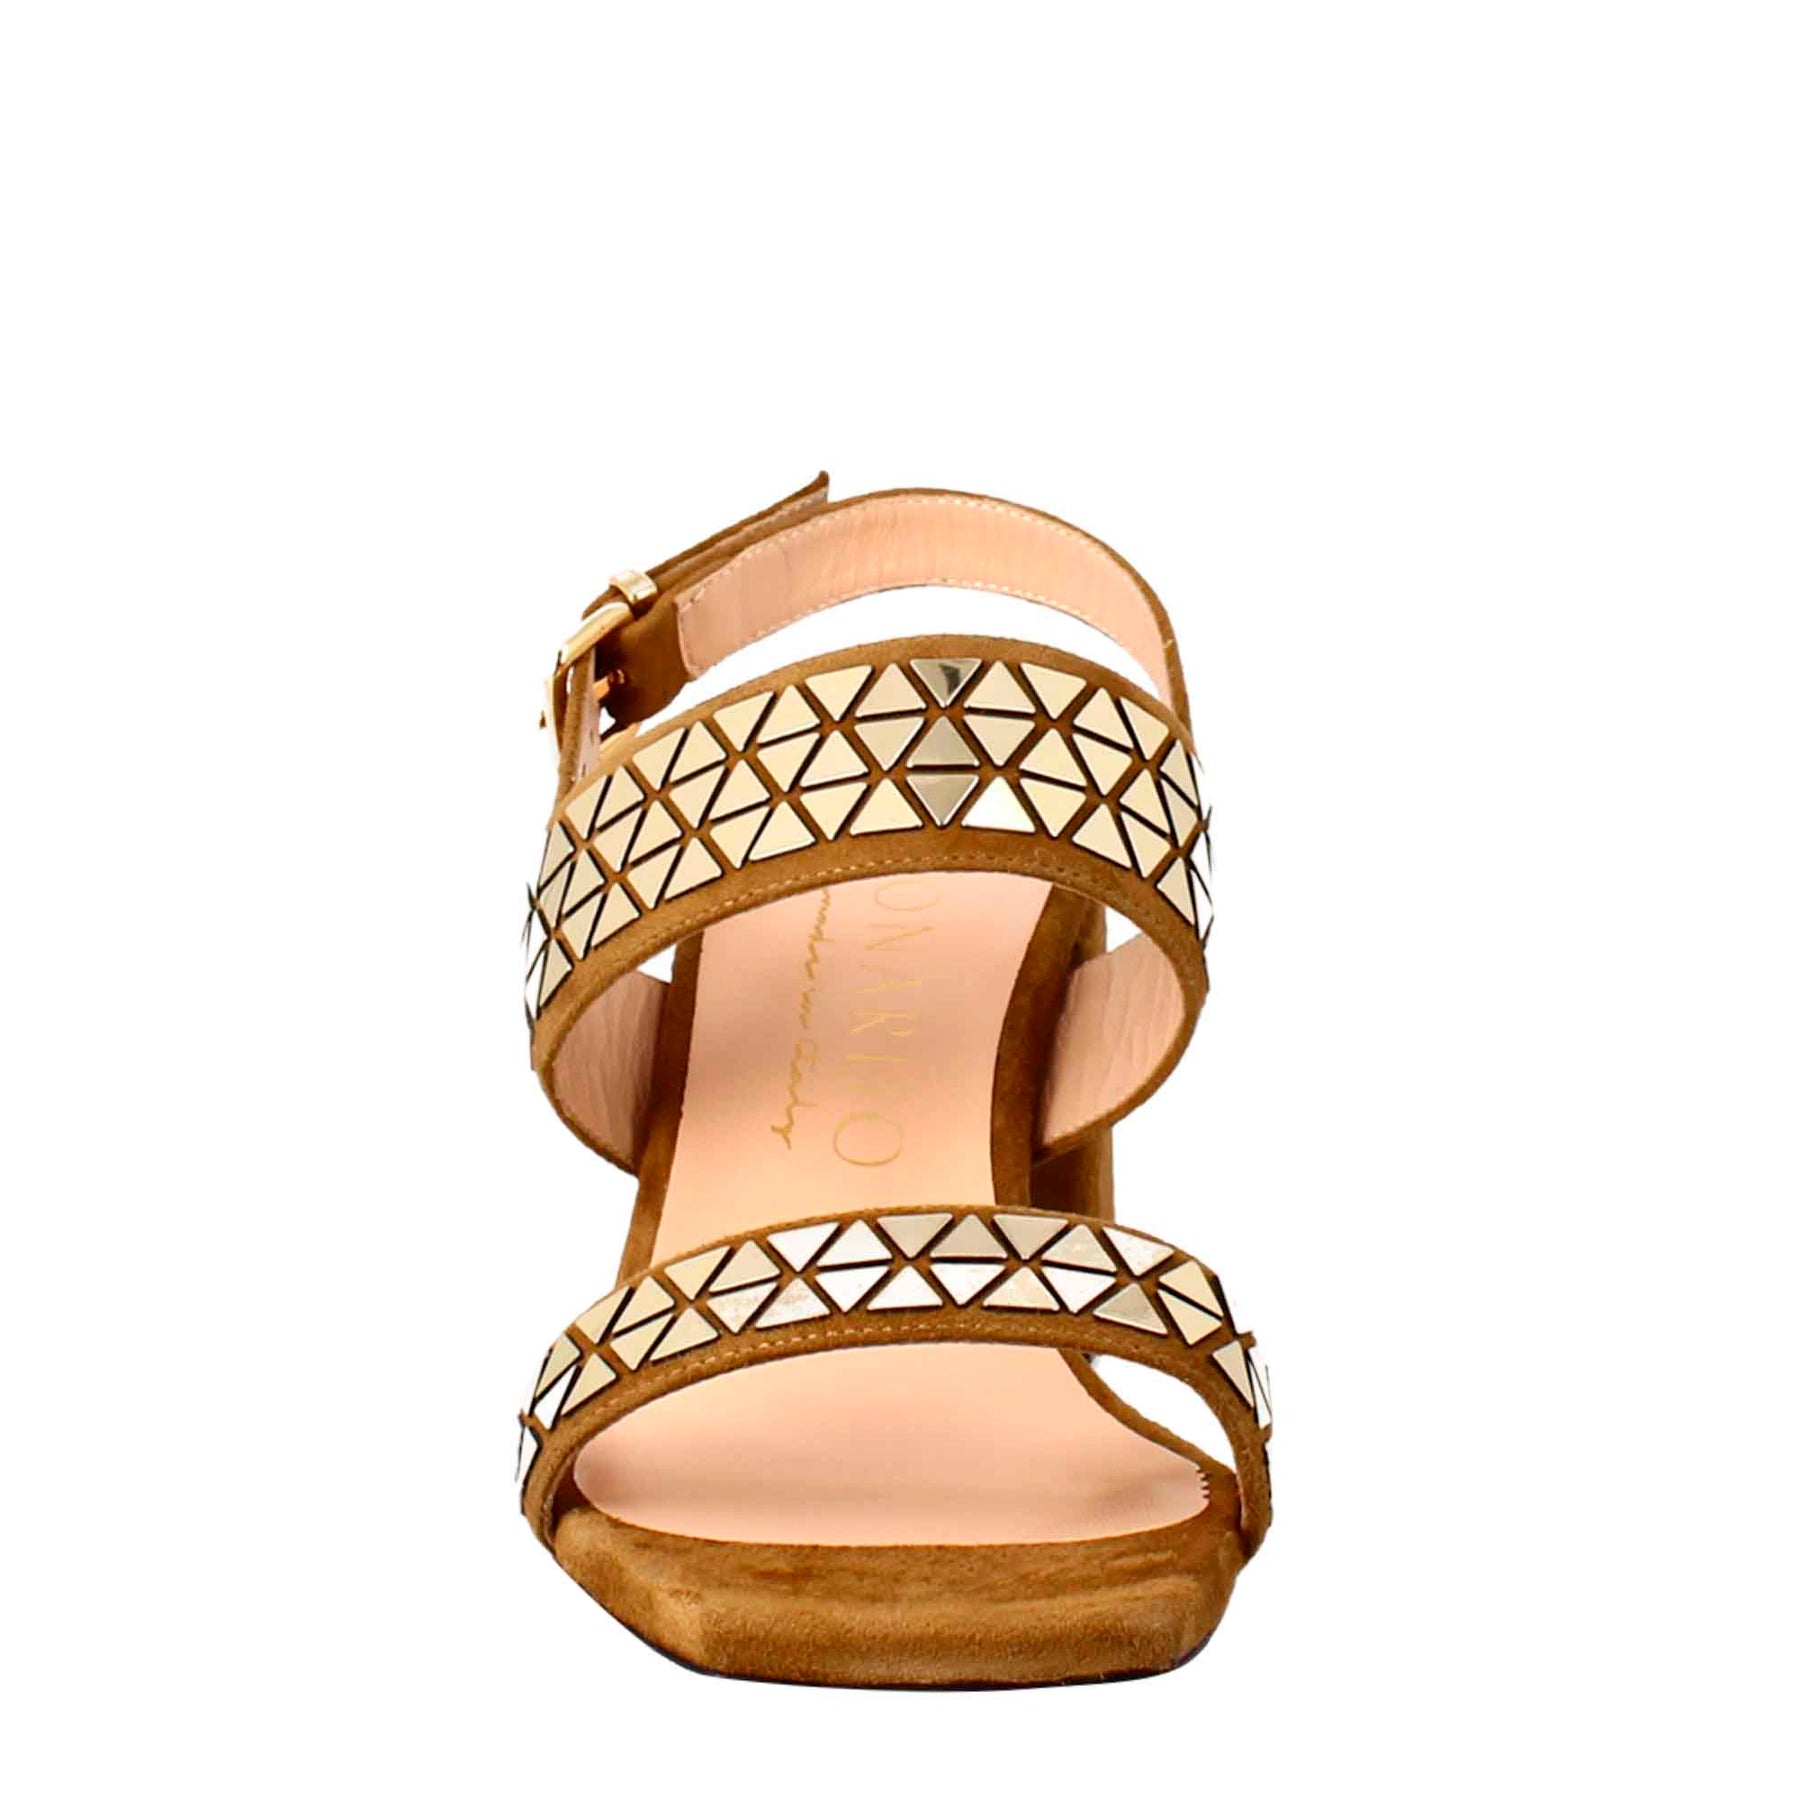 Sandalo da donna in pelle scamosciata marrone con glitter applicati